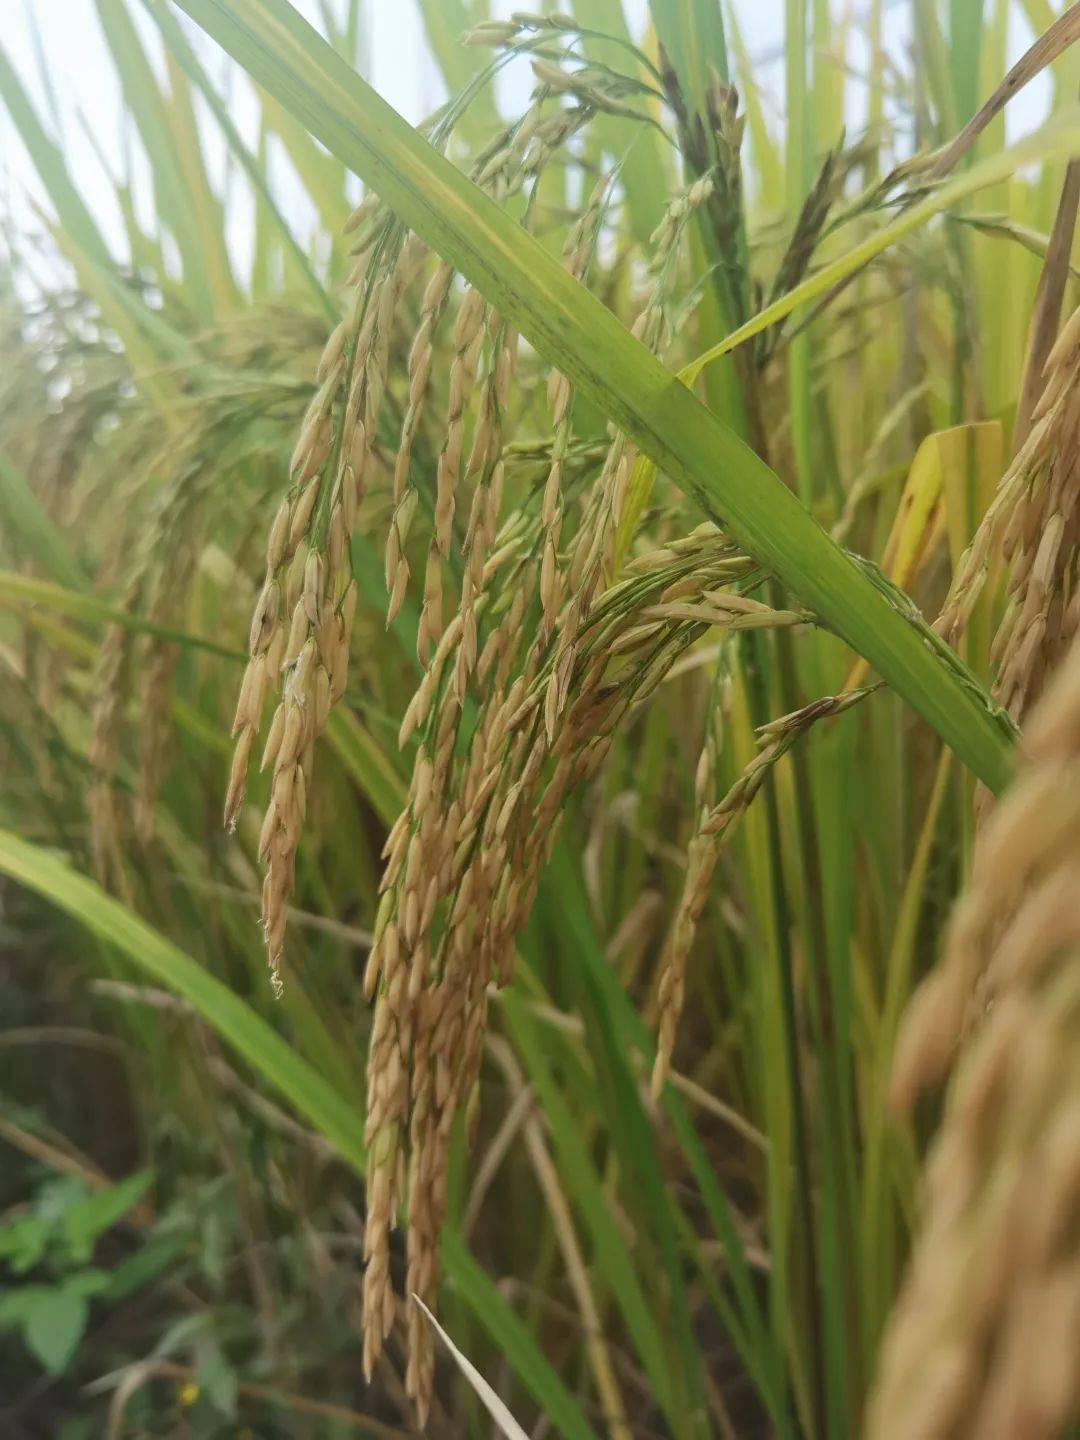 3007水稻种子简介图片